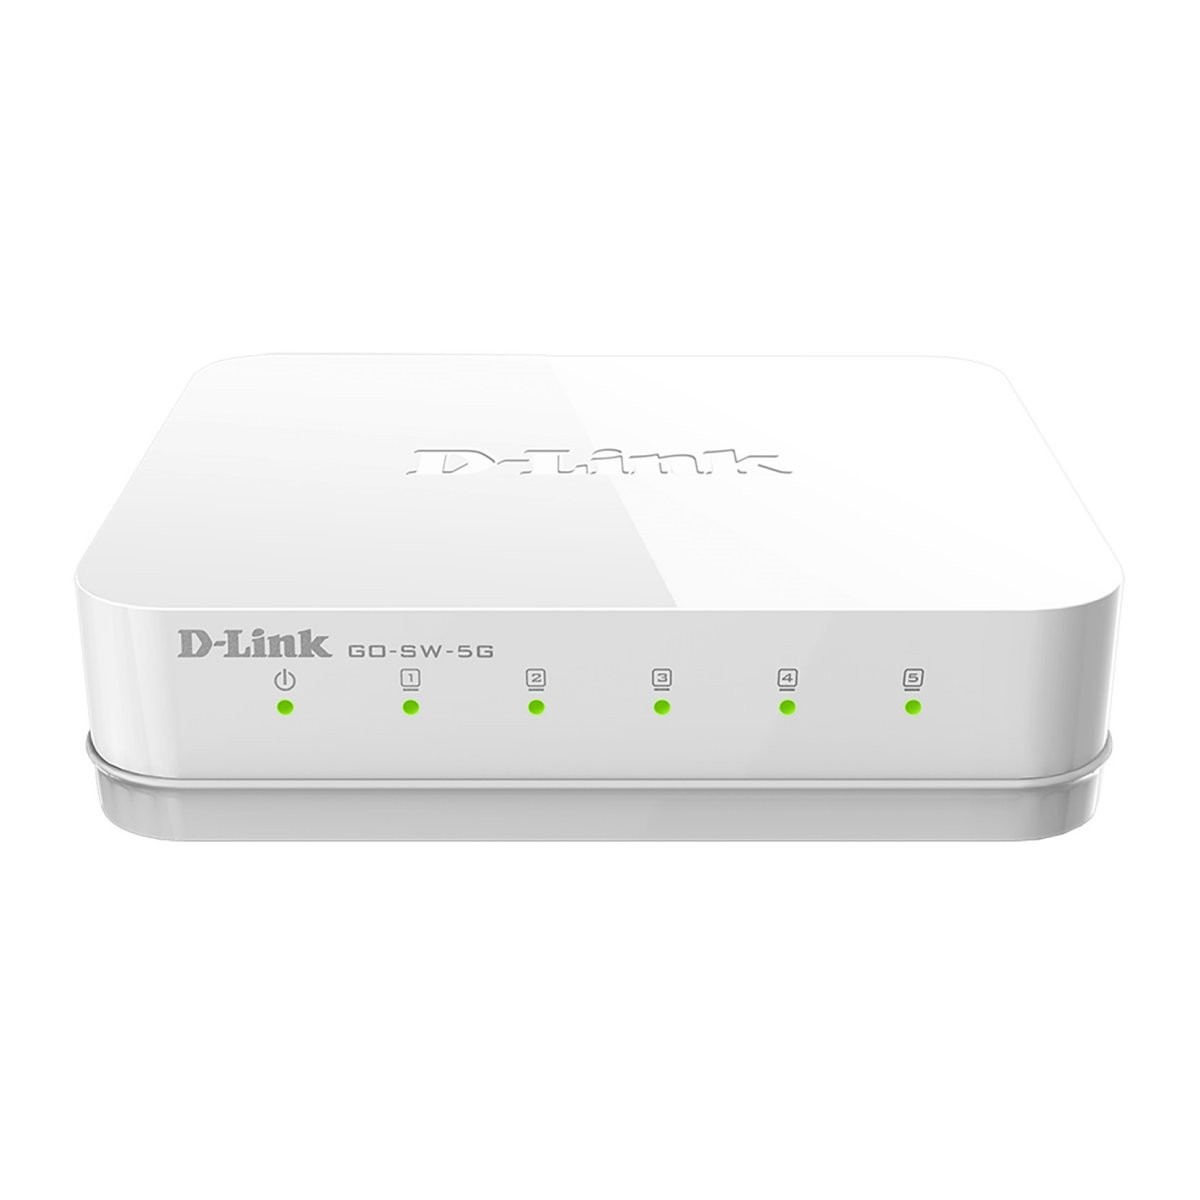 D-LINK GO Switch réseau 5 ports Ethernet RJ45